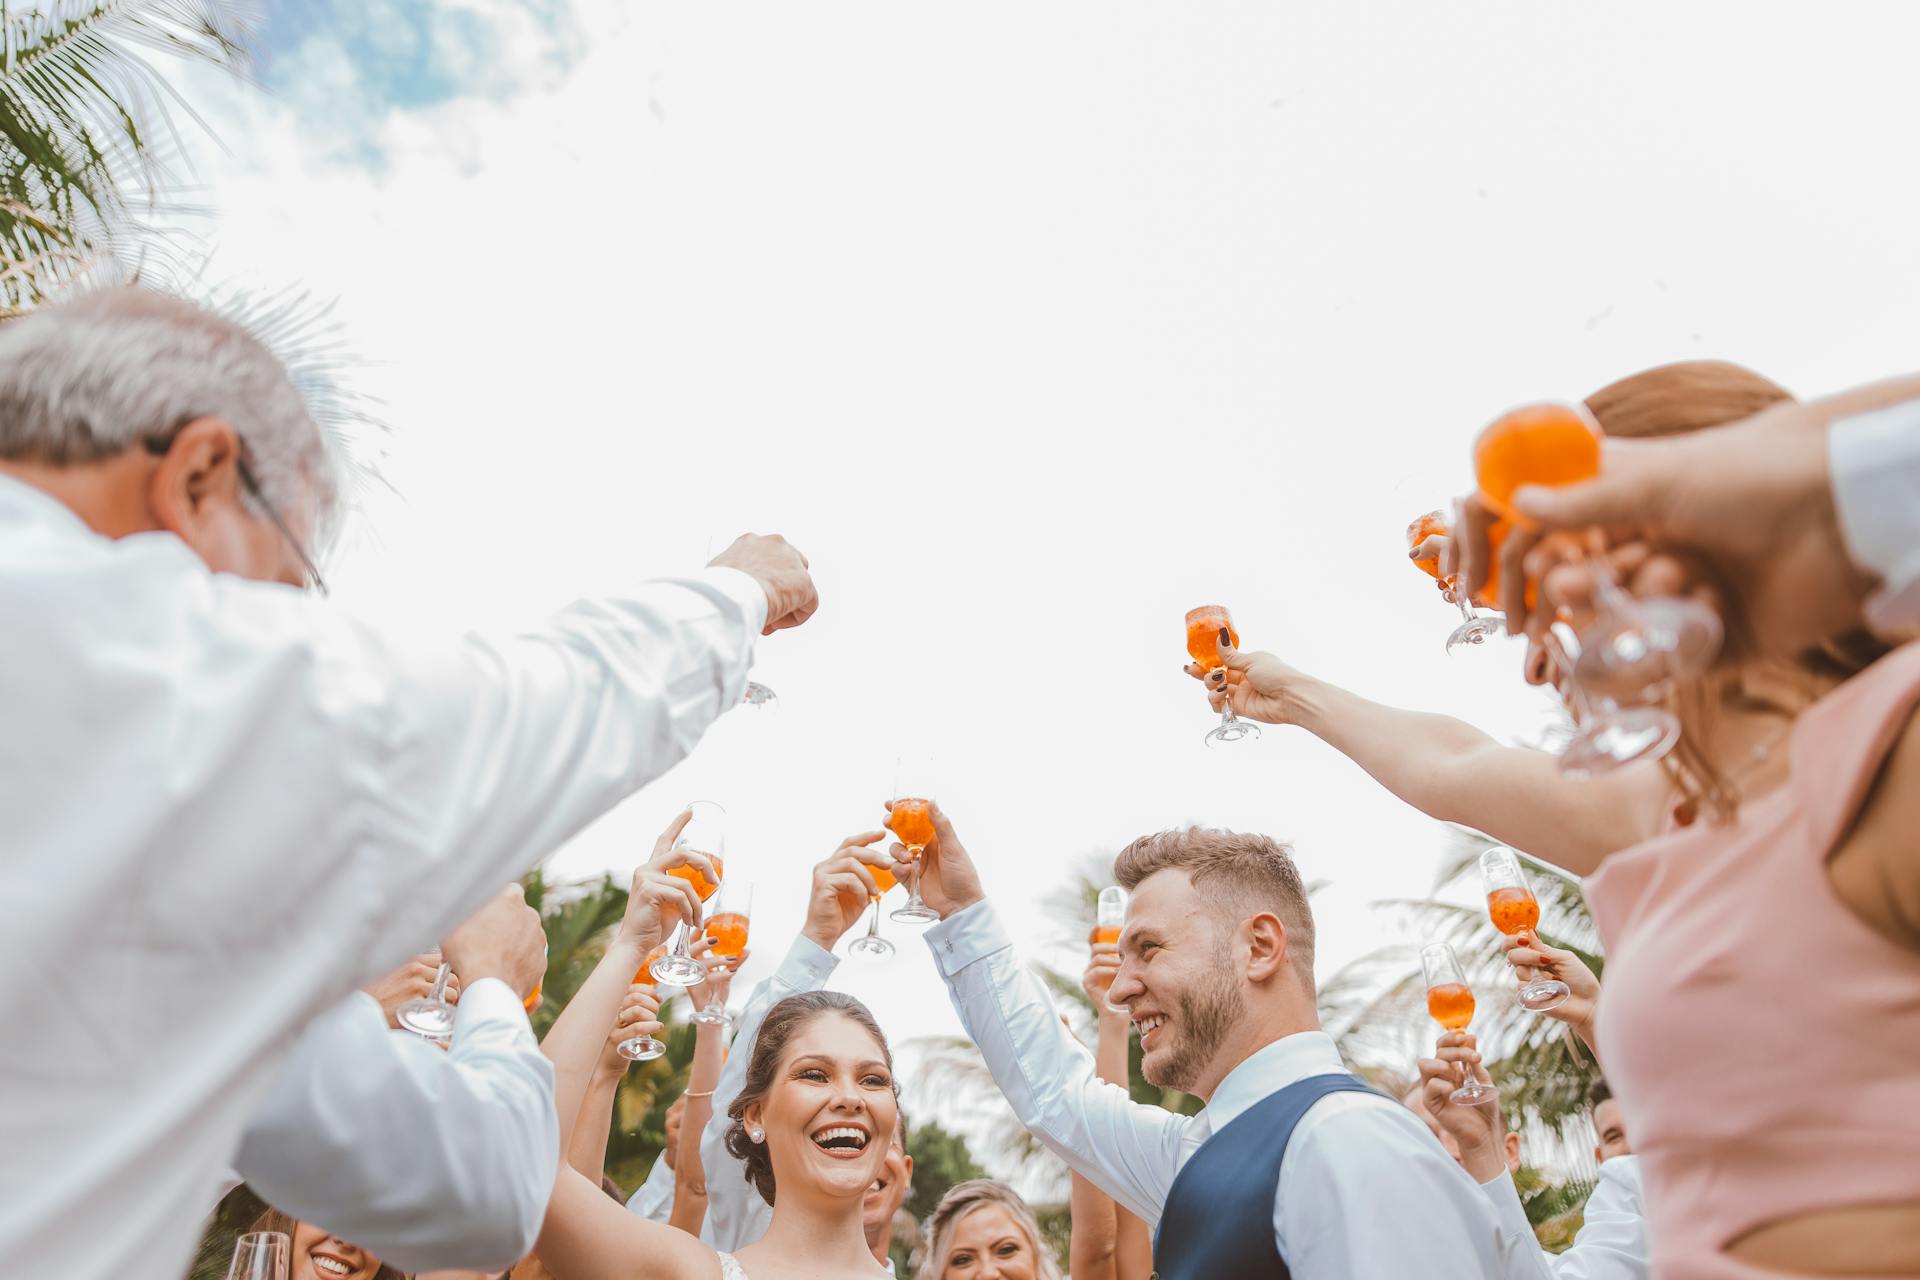 Menschen, die während einer Hochzeitsfeier mit ihren Getränken anstoßen | Quelle: Pexels